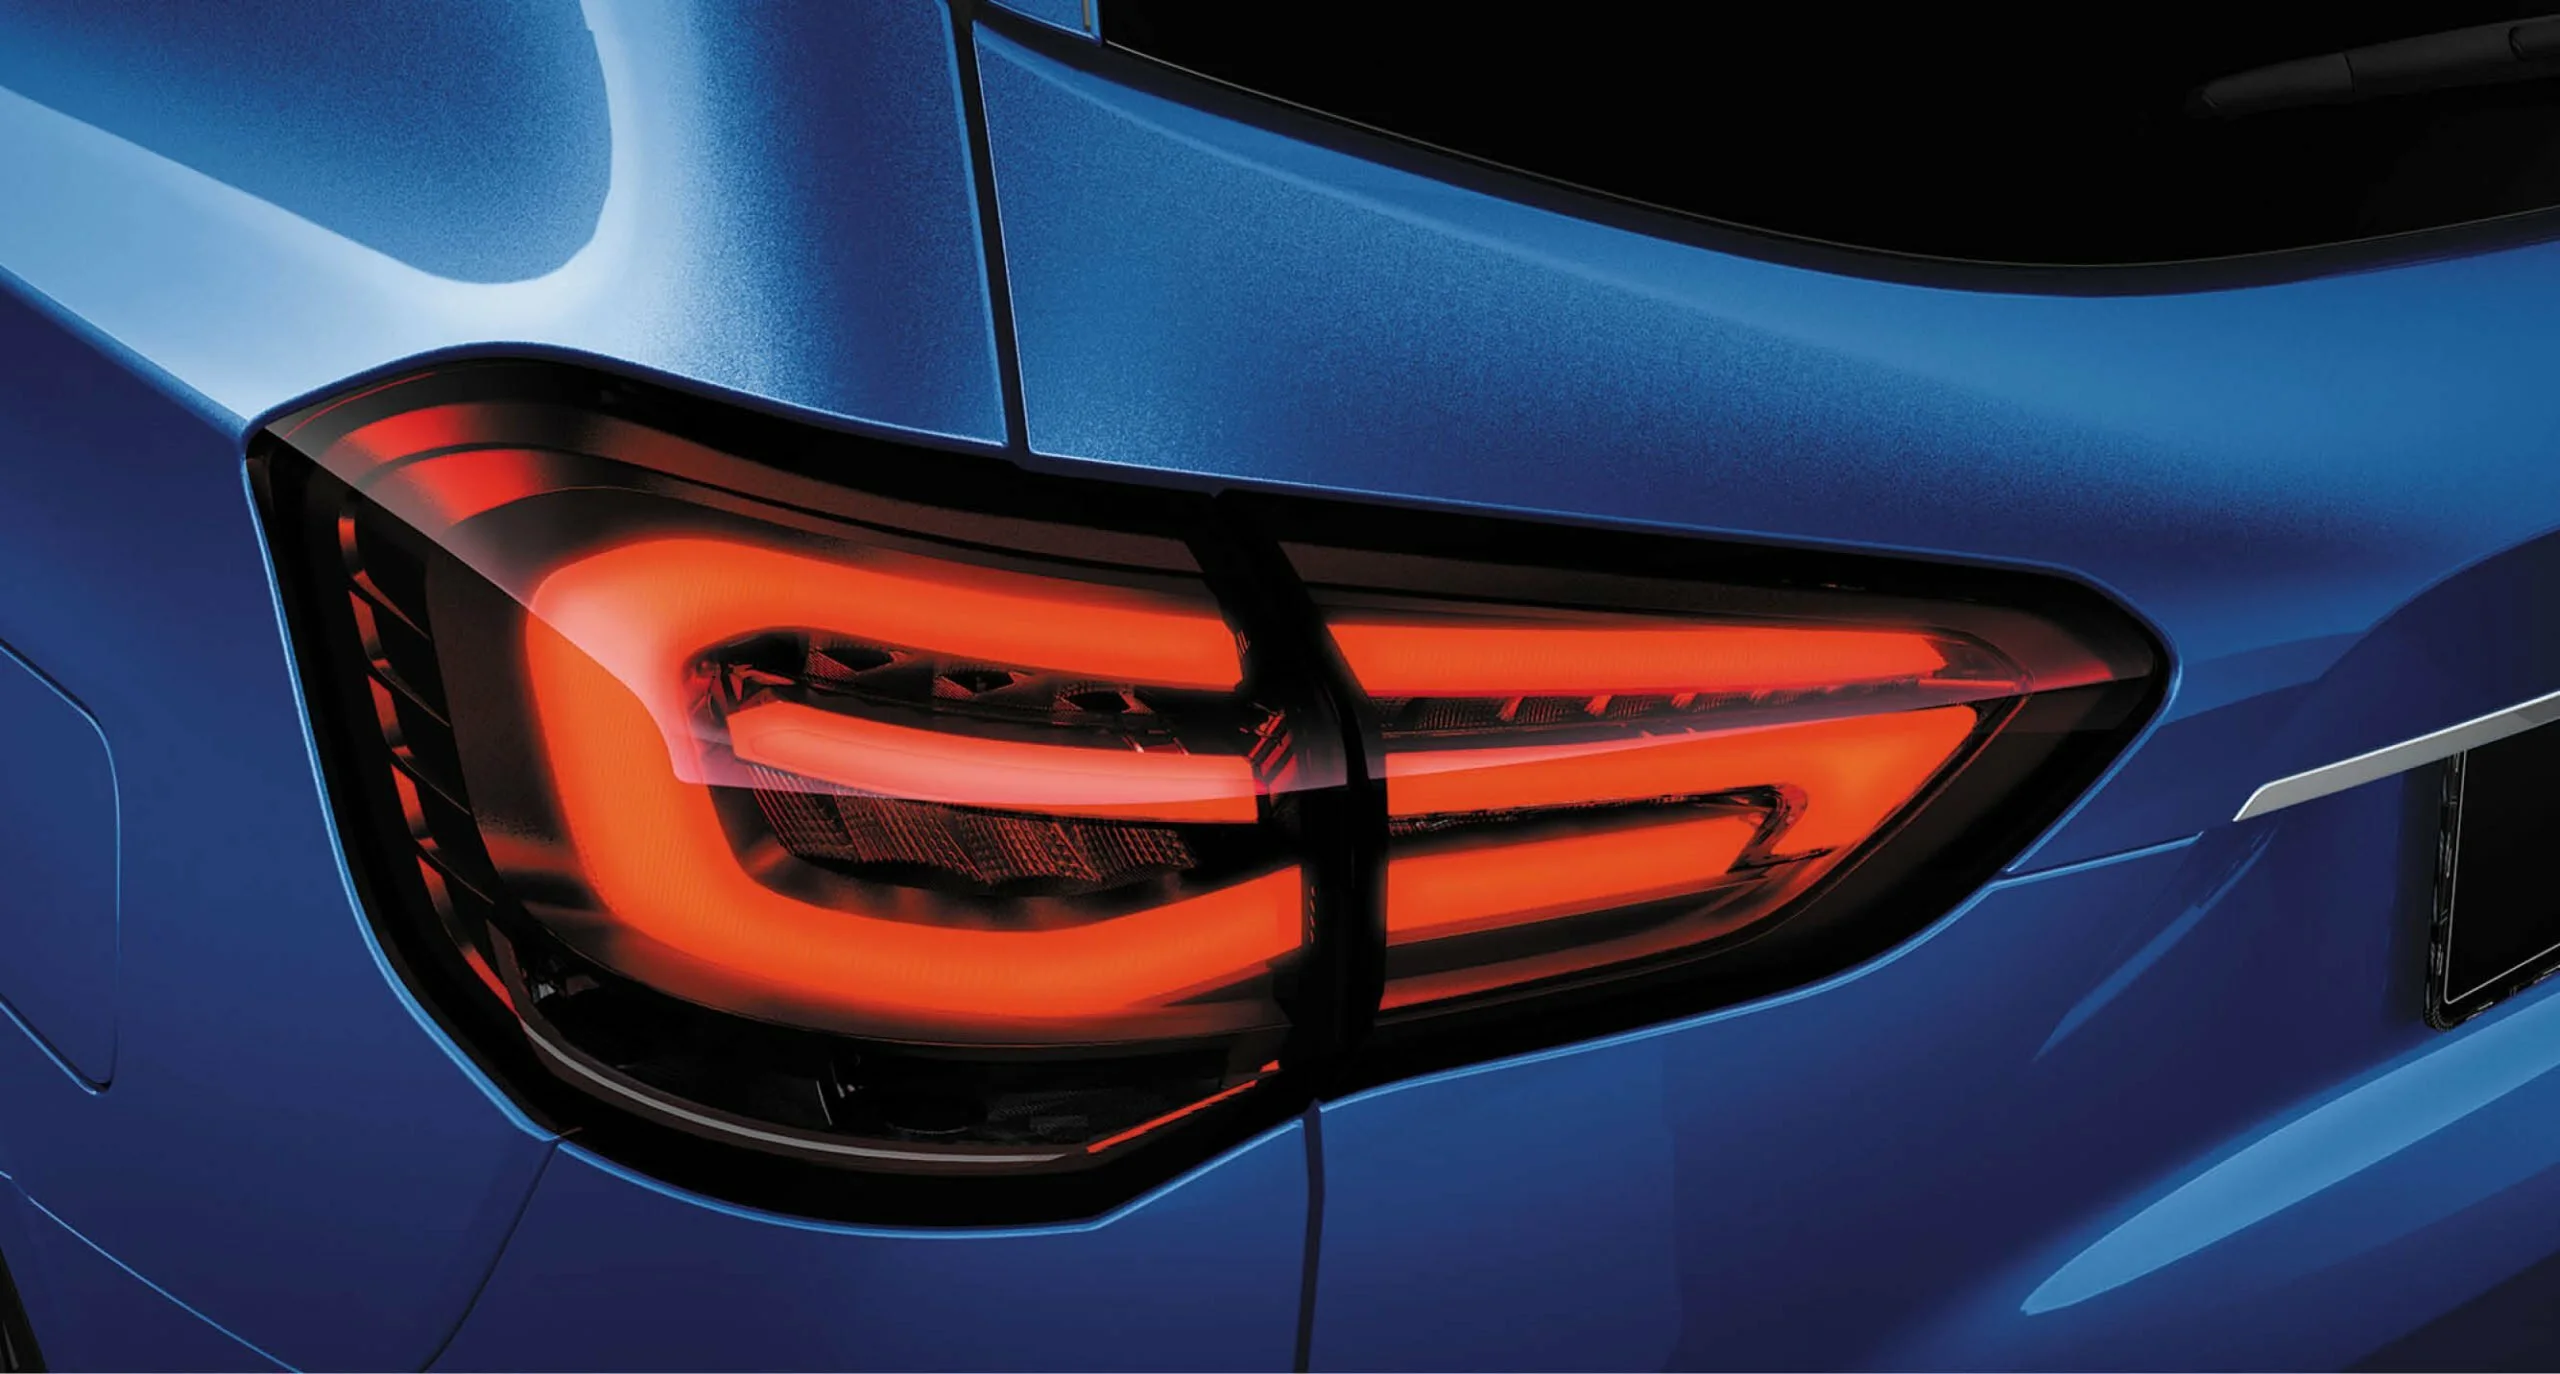 Luz trasera muy reconocible, clara, y el auto detrás puede identificar fácilmente el modelo del SUV Maxus D90